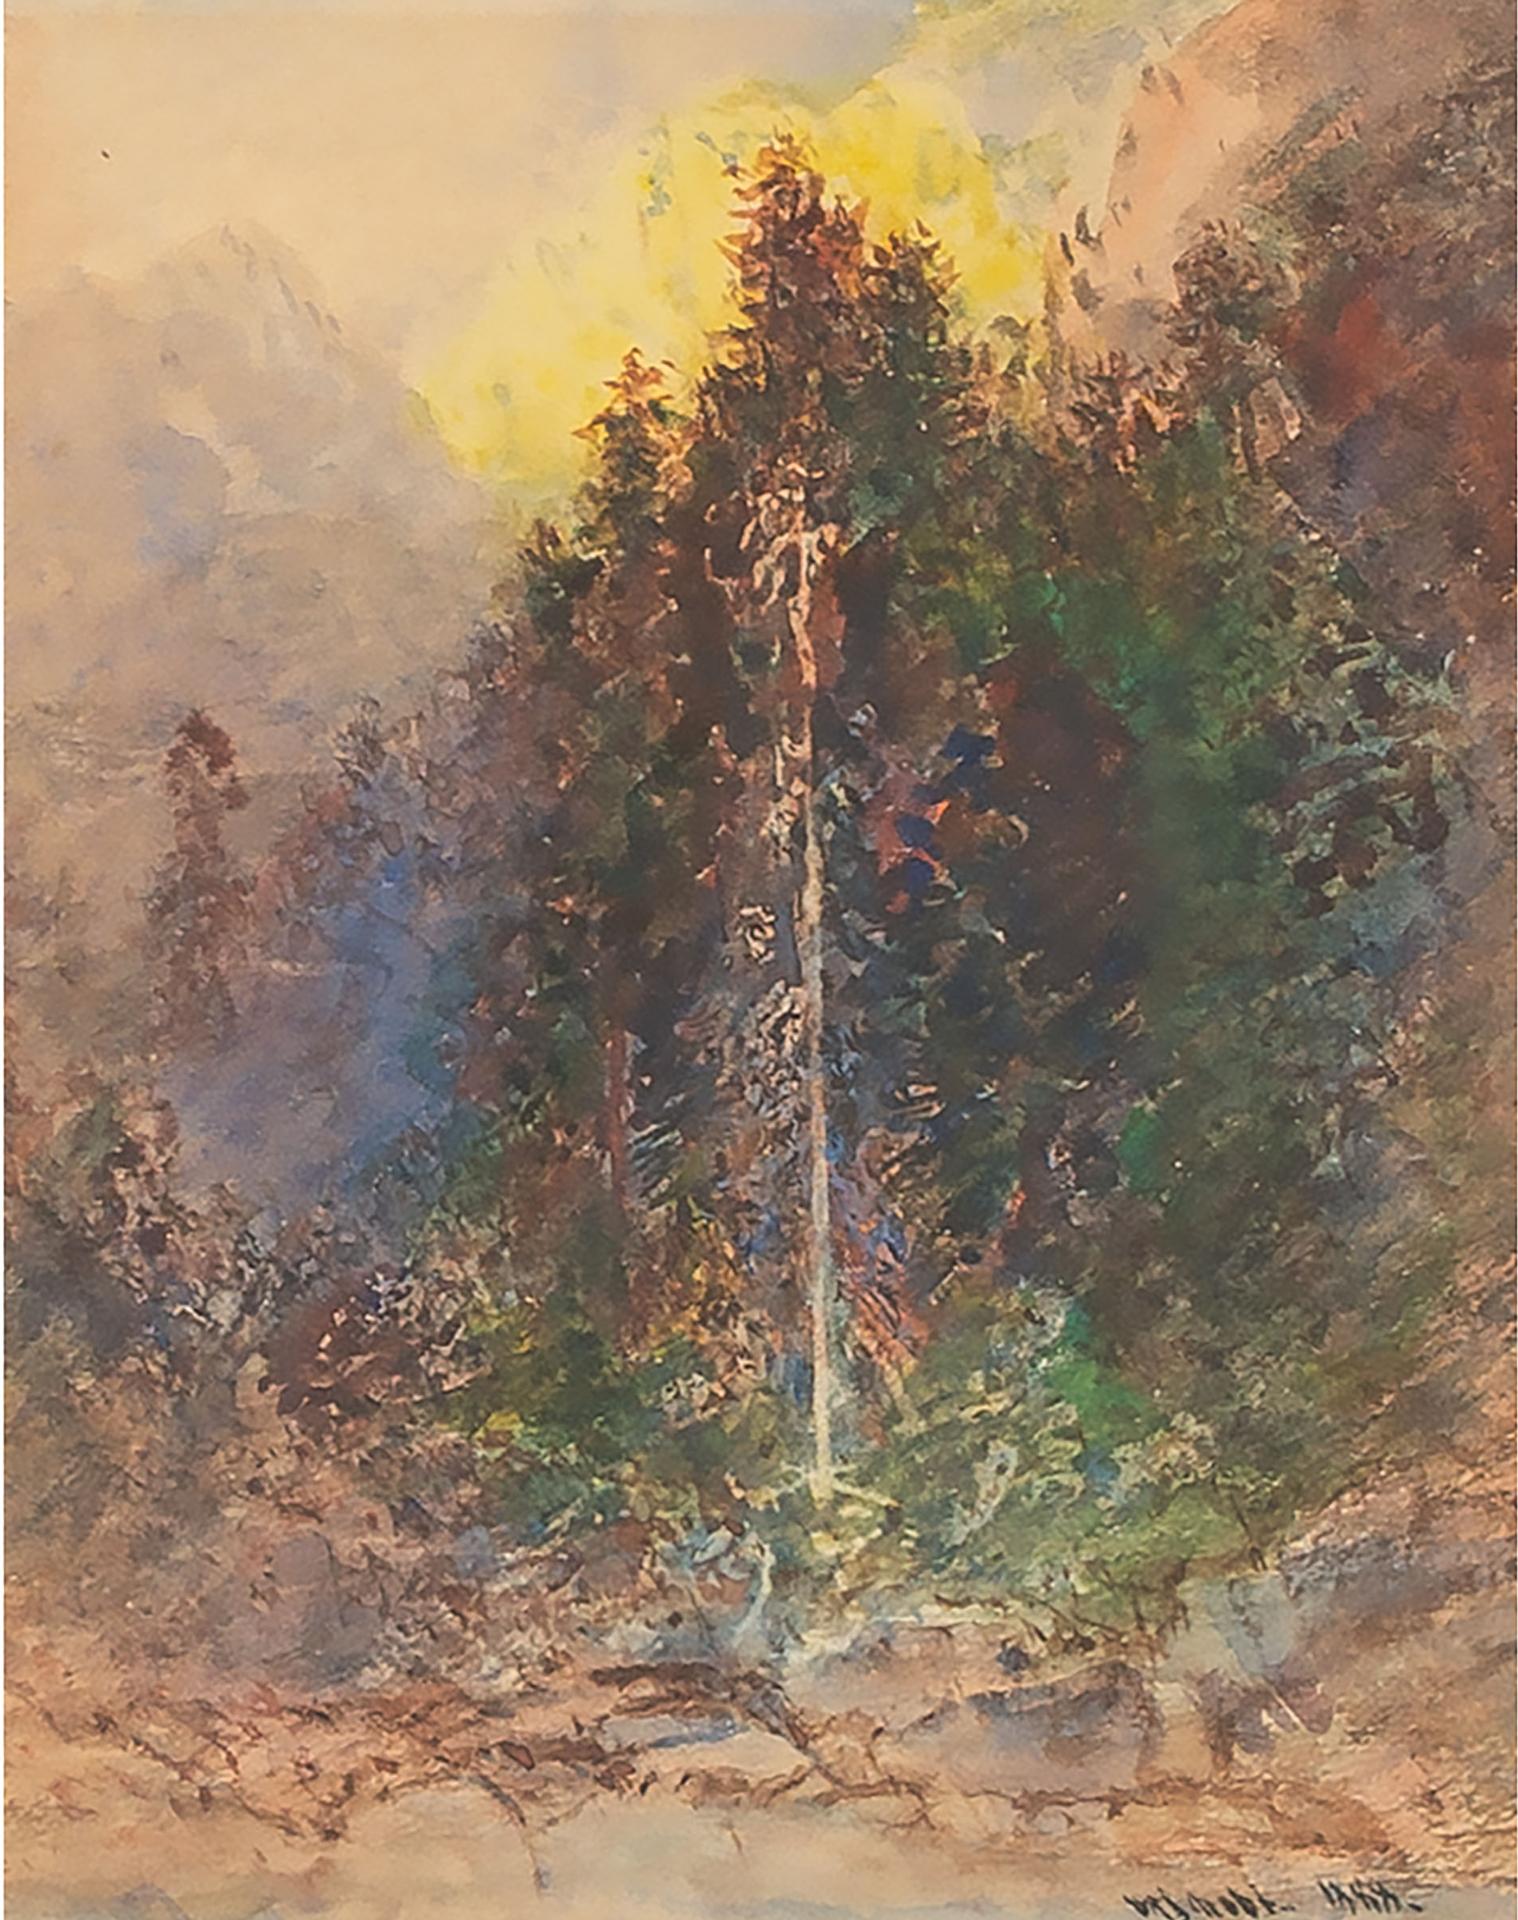 Otto Rheinhold Jacobi (1812-1901) - Landscape